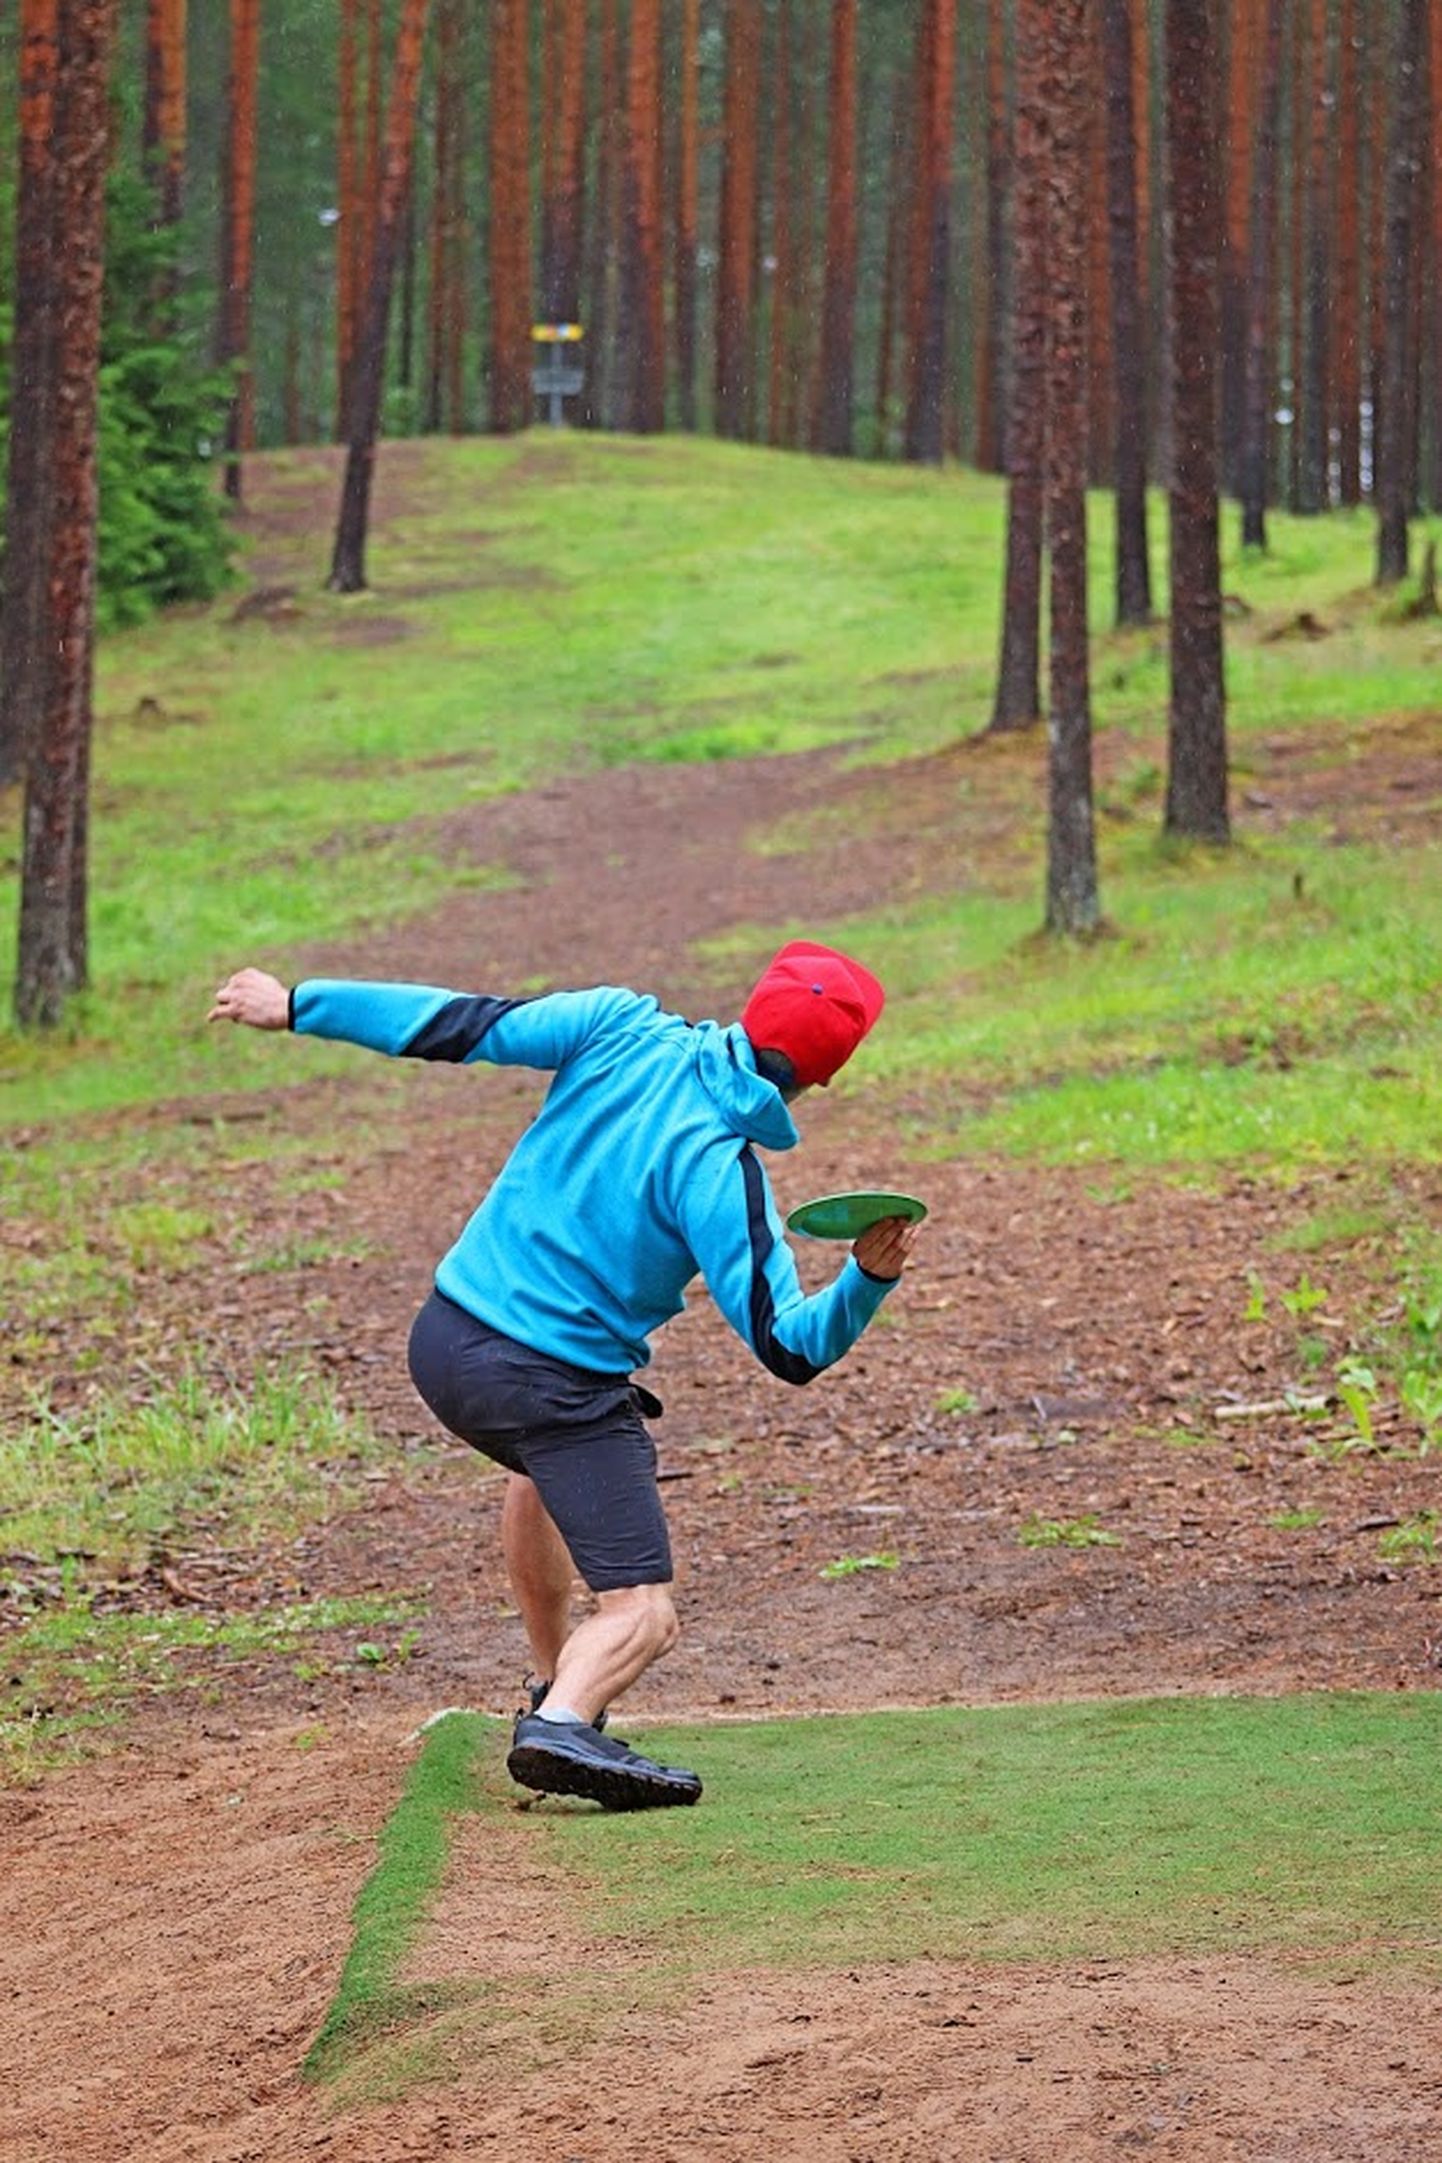 В минувшие выходные 360 любителей диск-гольфа соревновались не только в Мяэтагузе, но и в обновленном парке для диск-гольфа в Паннъярве.